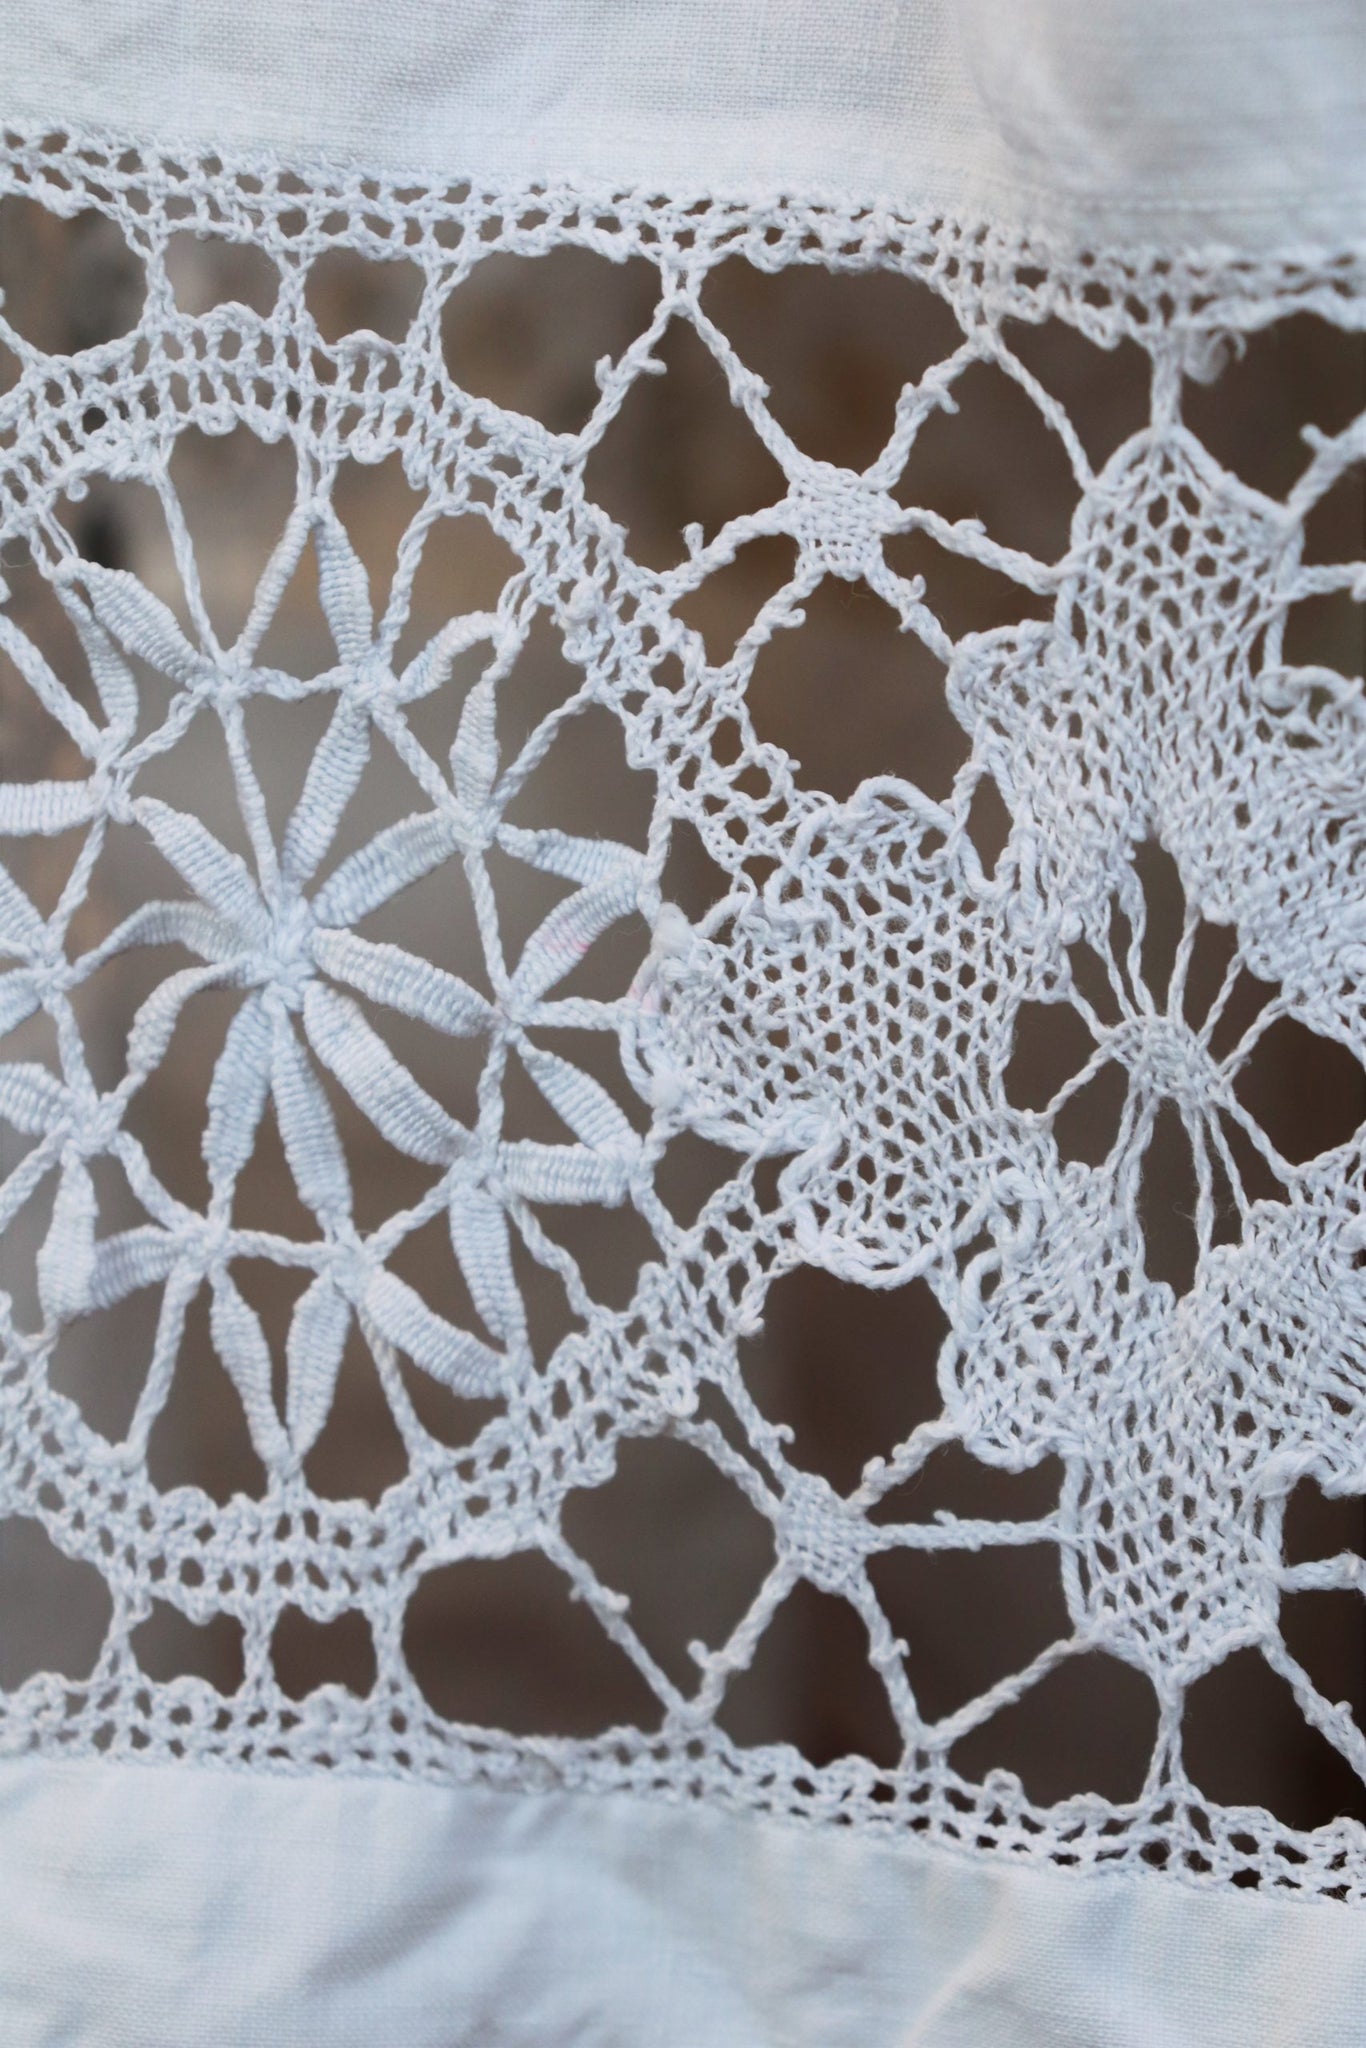 Antique Church Linen Dress Floor Length Hand Embroidery